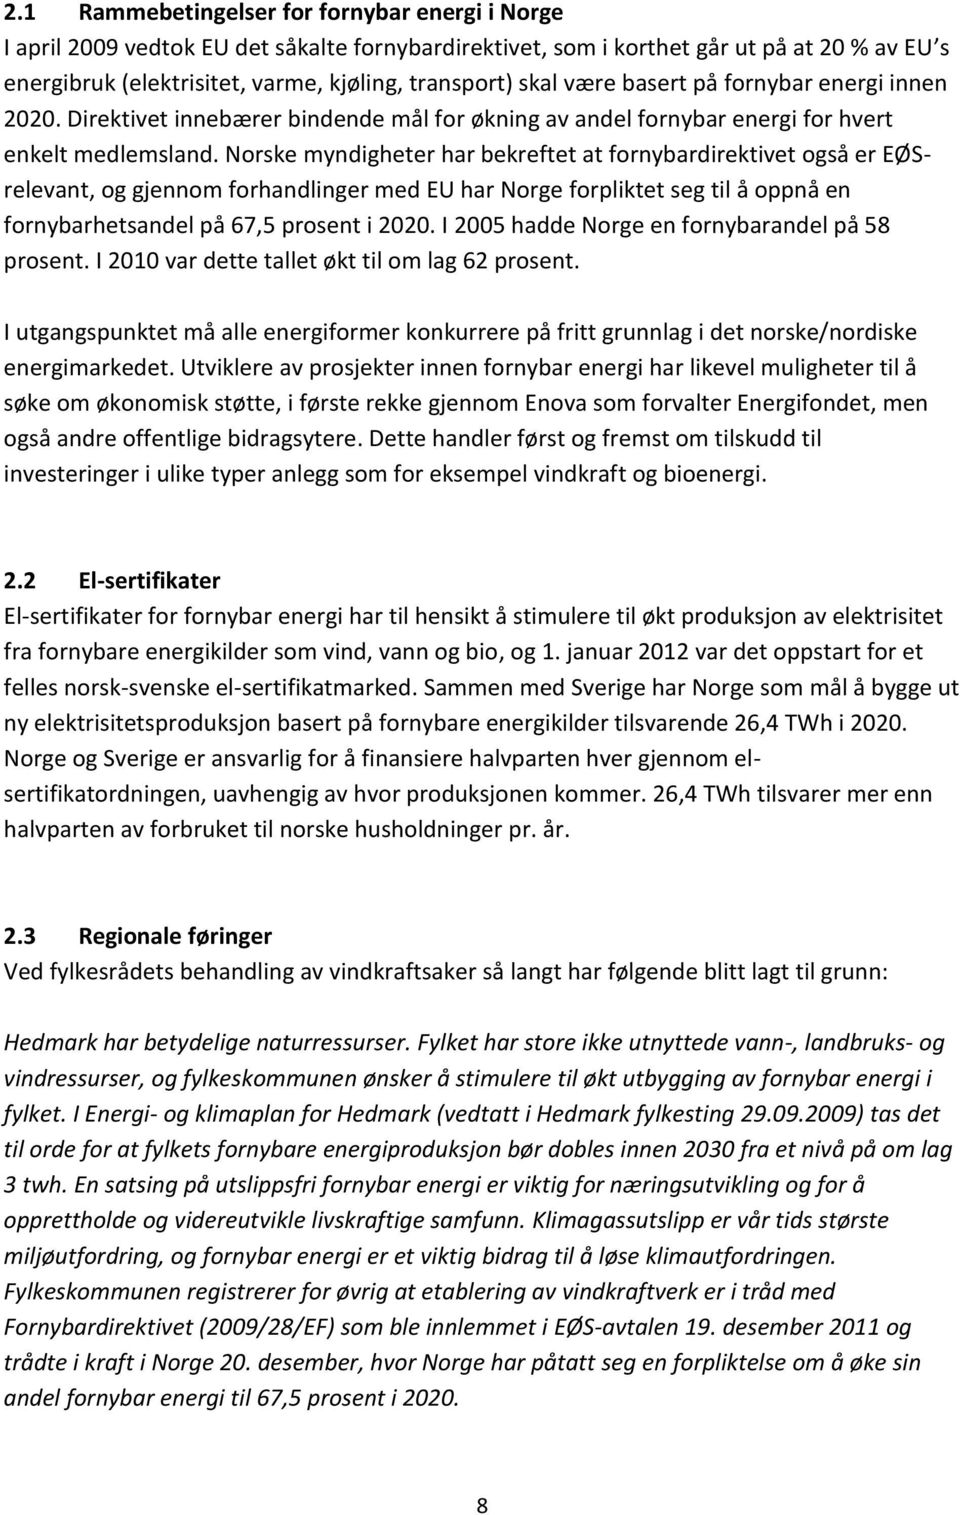 Norske myndigheter har bekreftet at fornybardirektivet også er EØSrelevant, og gjennom forhandlinger med EU har Norge forpliktet seg til å oppnå en fornybarhetsandel på 67,5 prosent i 2020.